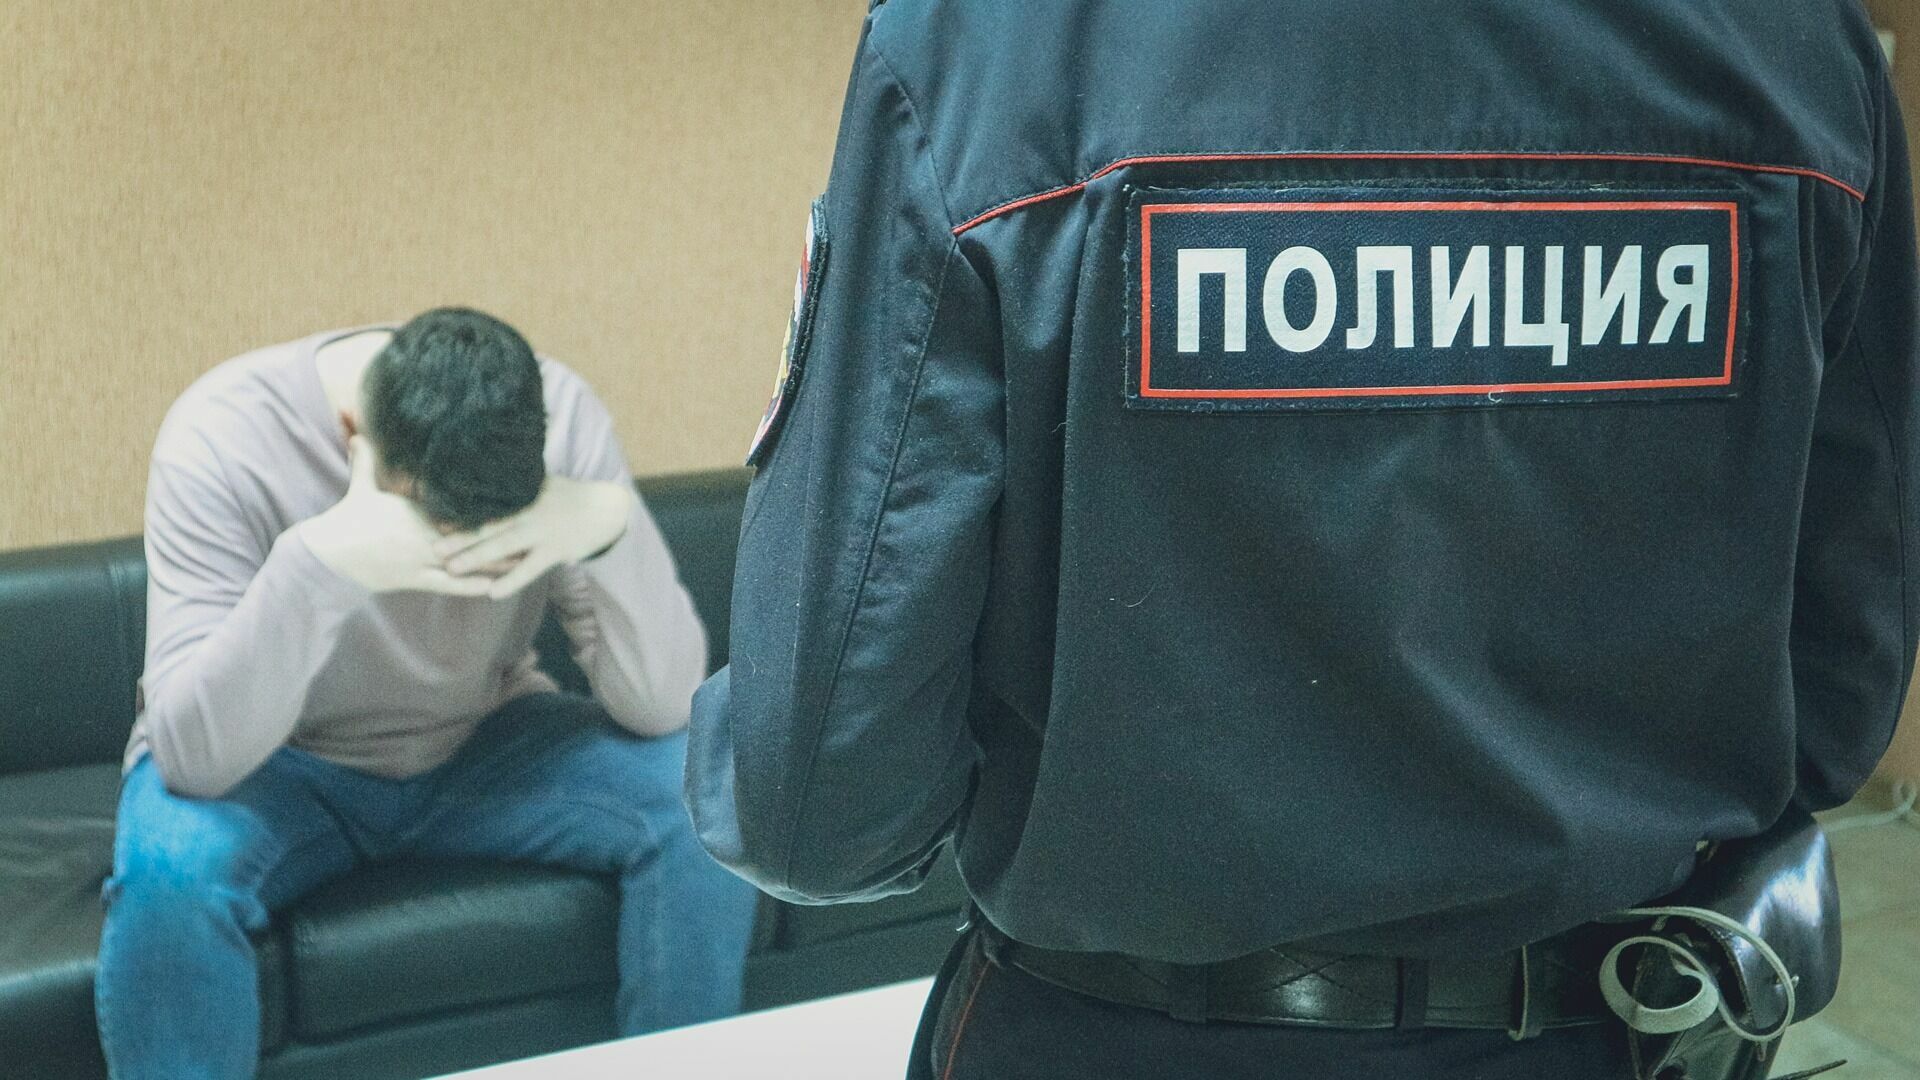 Полиция нашла 12-летнюю девочку в Нижнем Новгороде